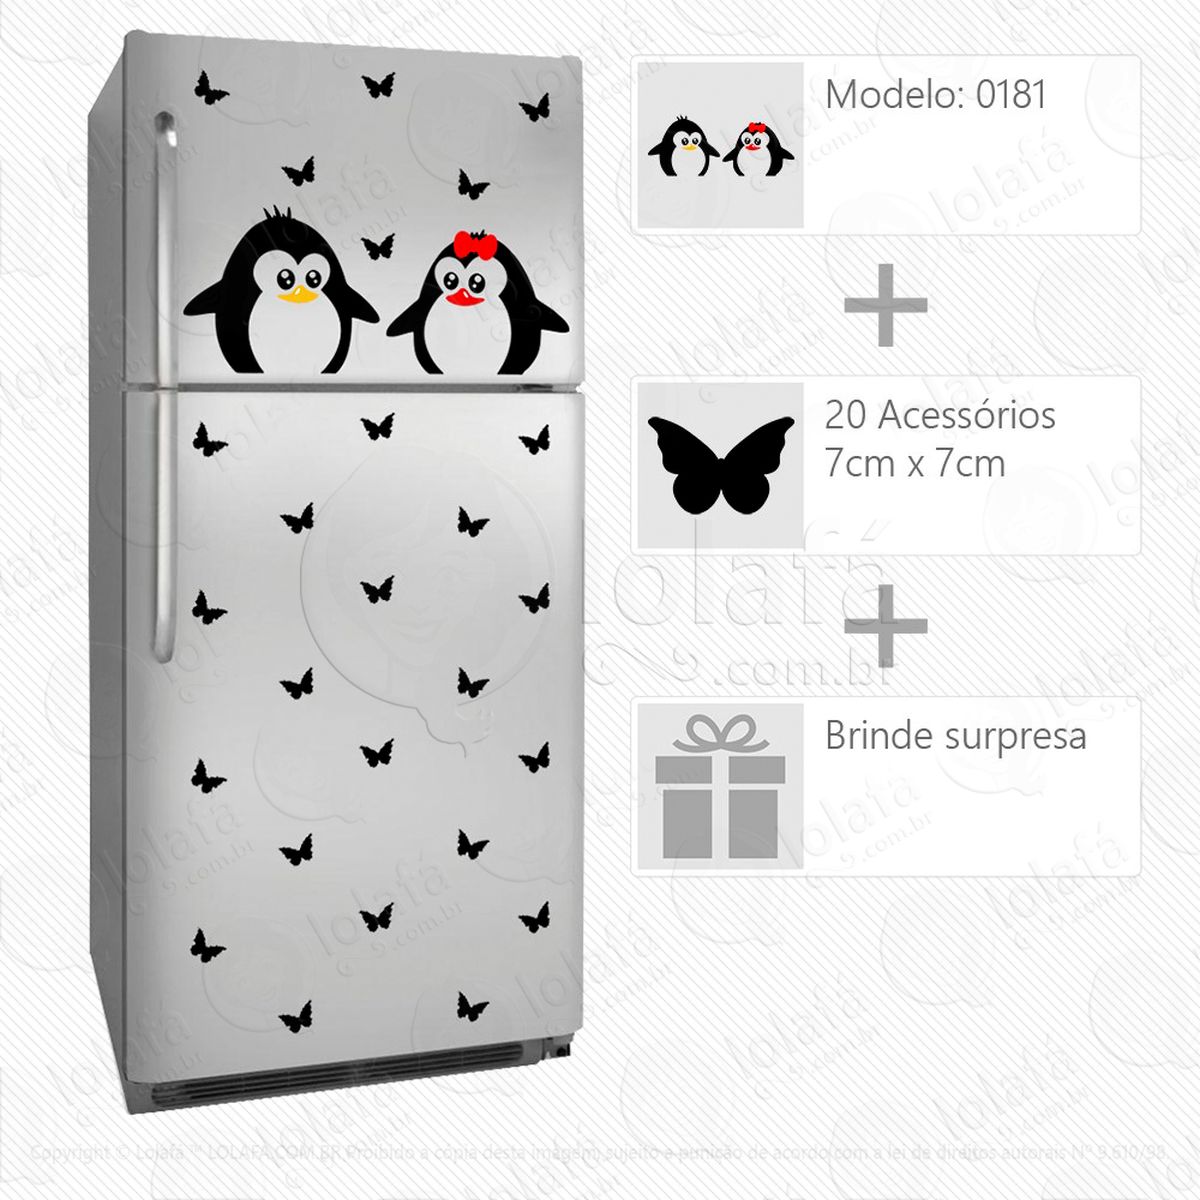 pinguins adesivo para geladeira e frigobar - mod:181